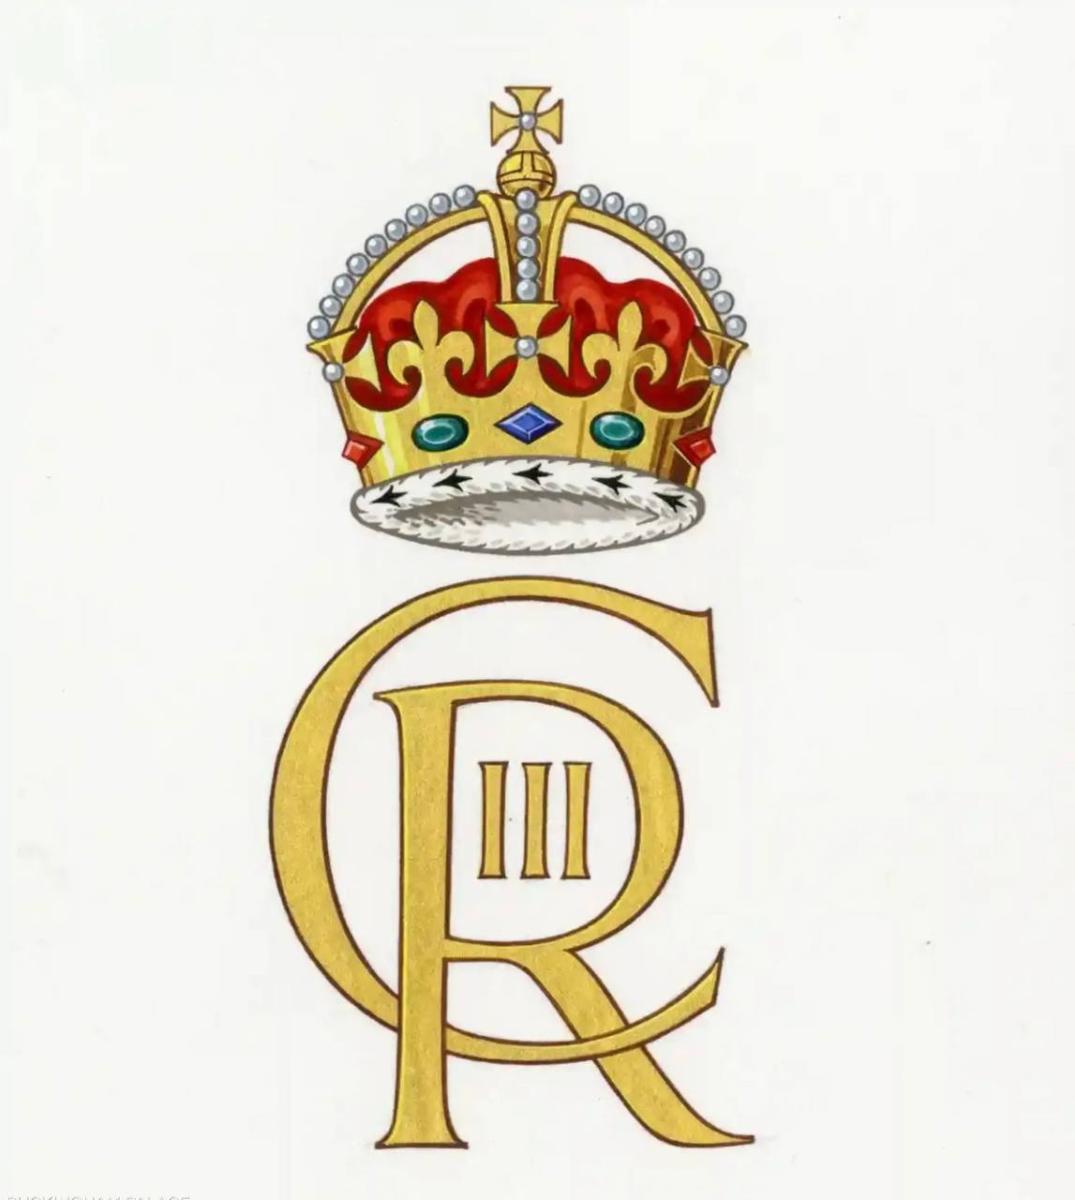 الشعار الملكي الجديد للملك تشارلز الثالث